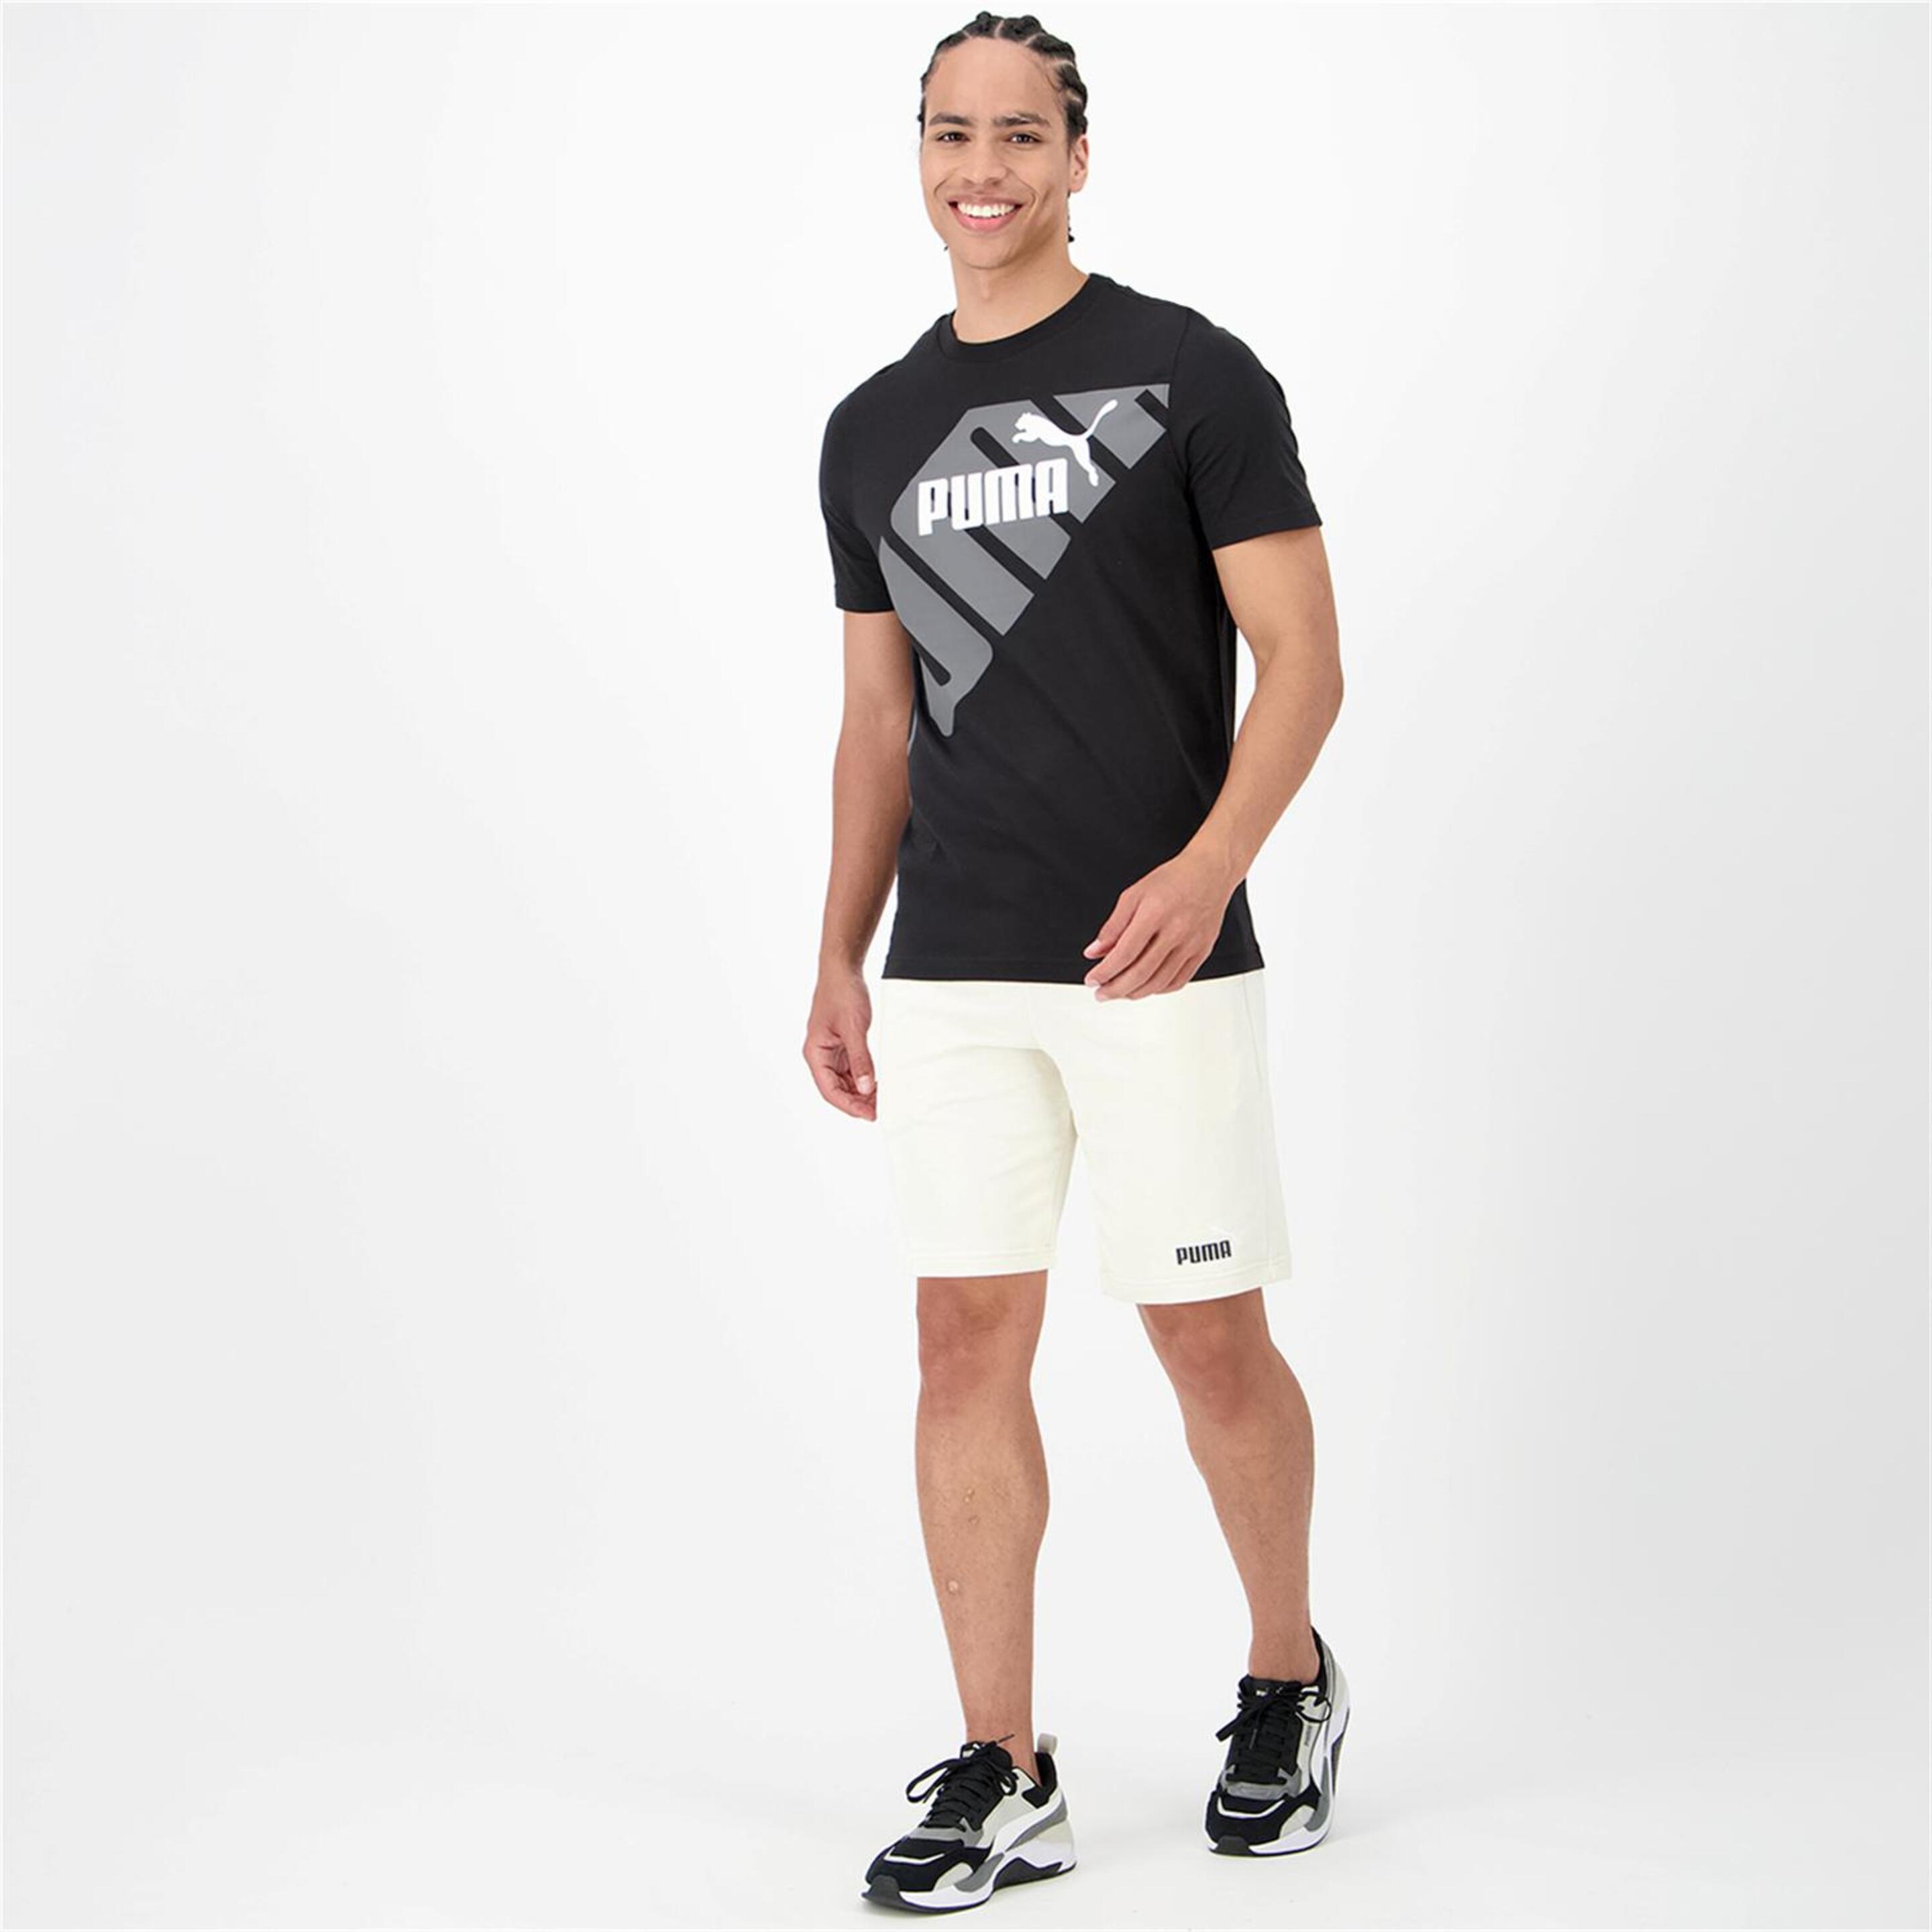 Puma Power - Negro - Camiseta Hombre